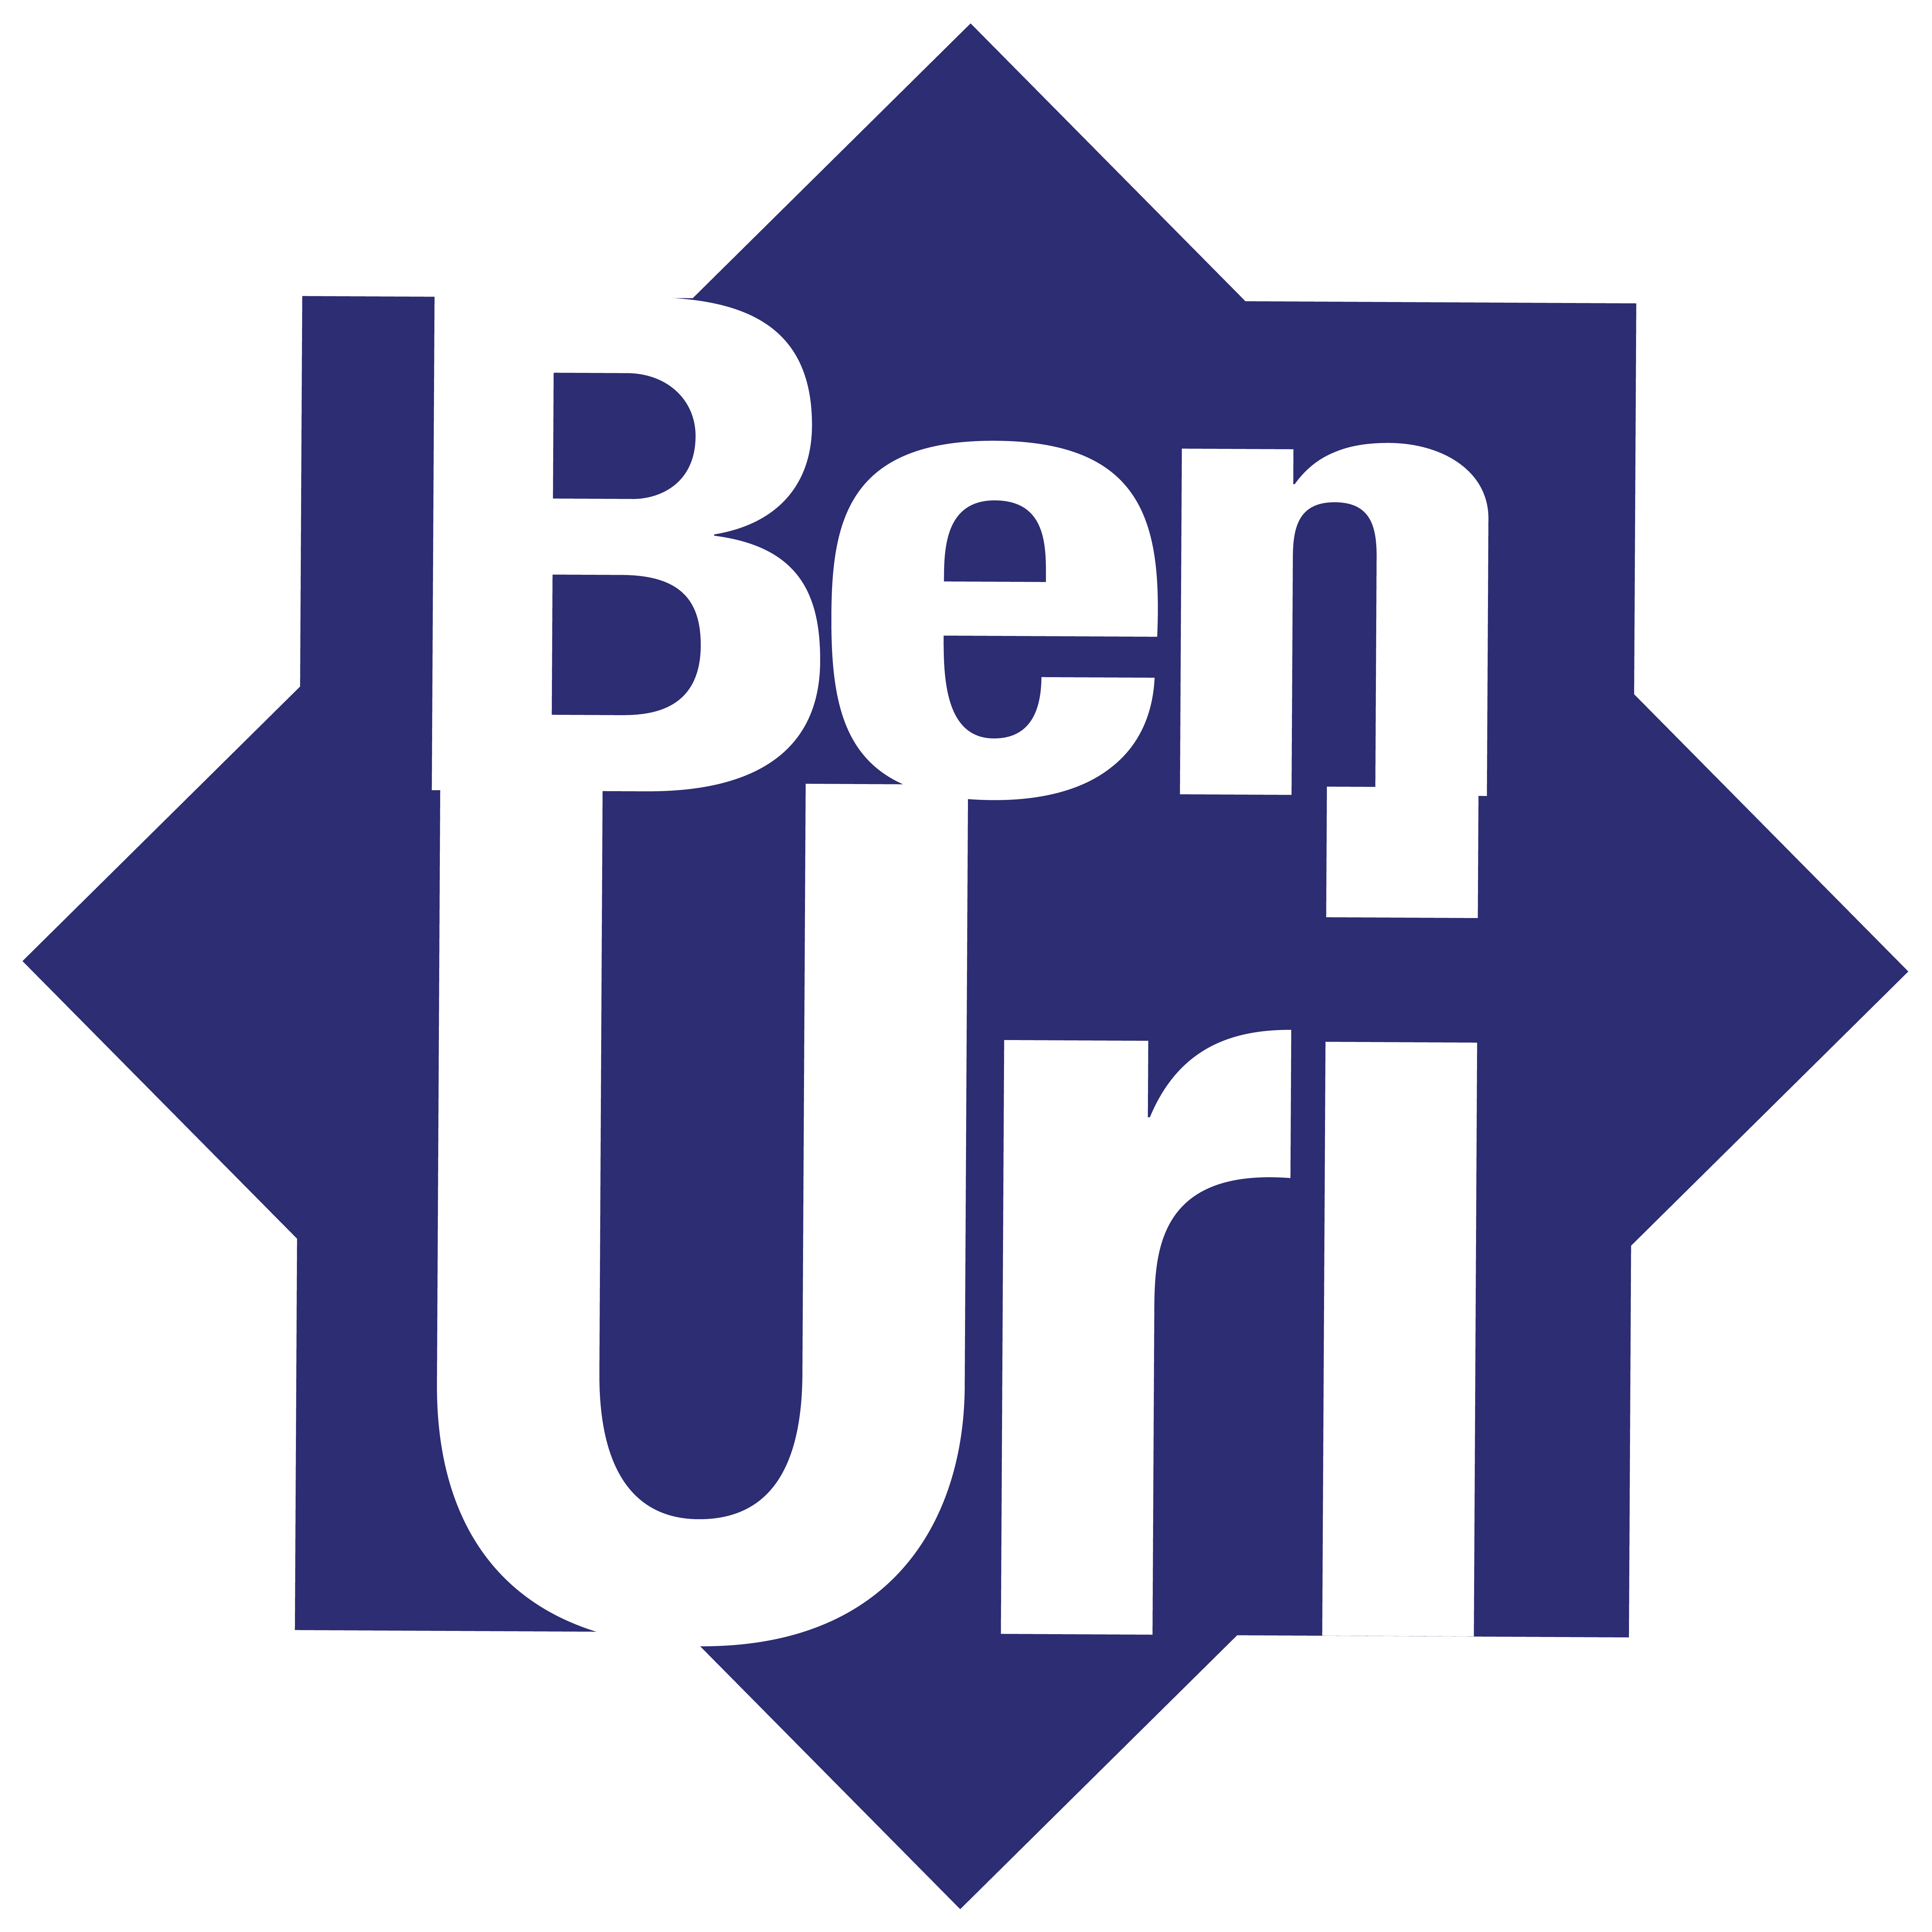 Ben Uri Logo firmowe galerii i muzeum